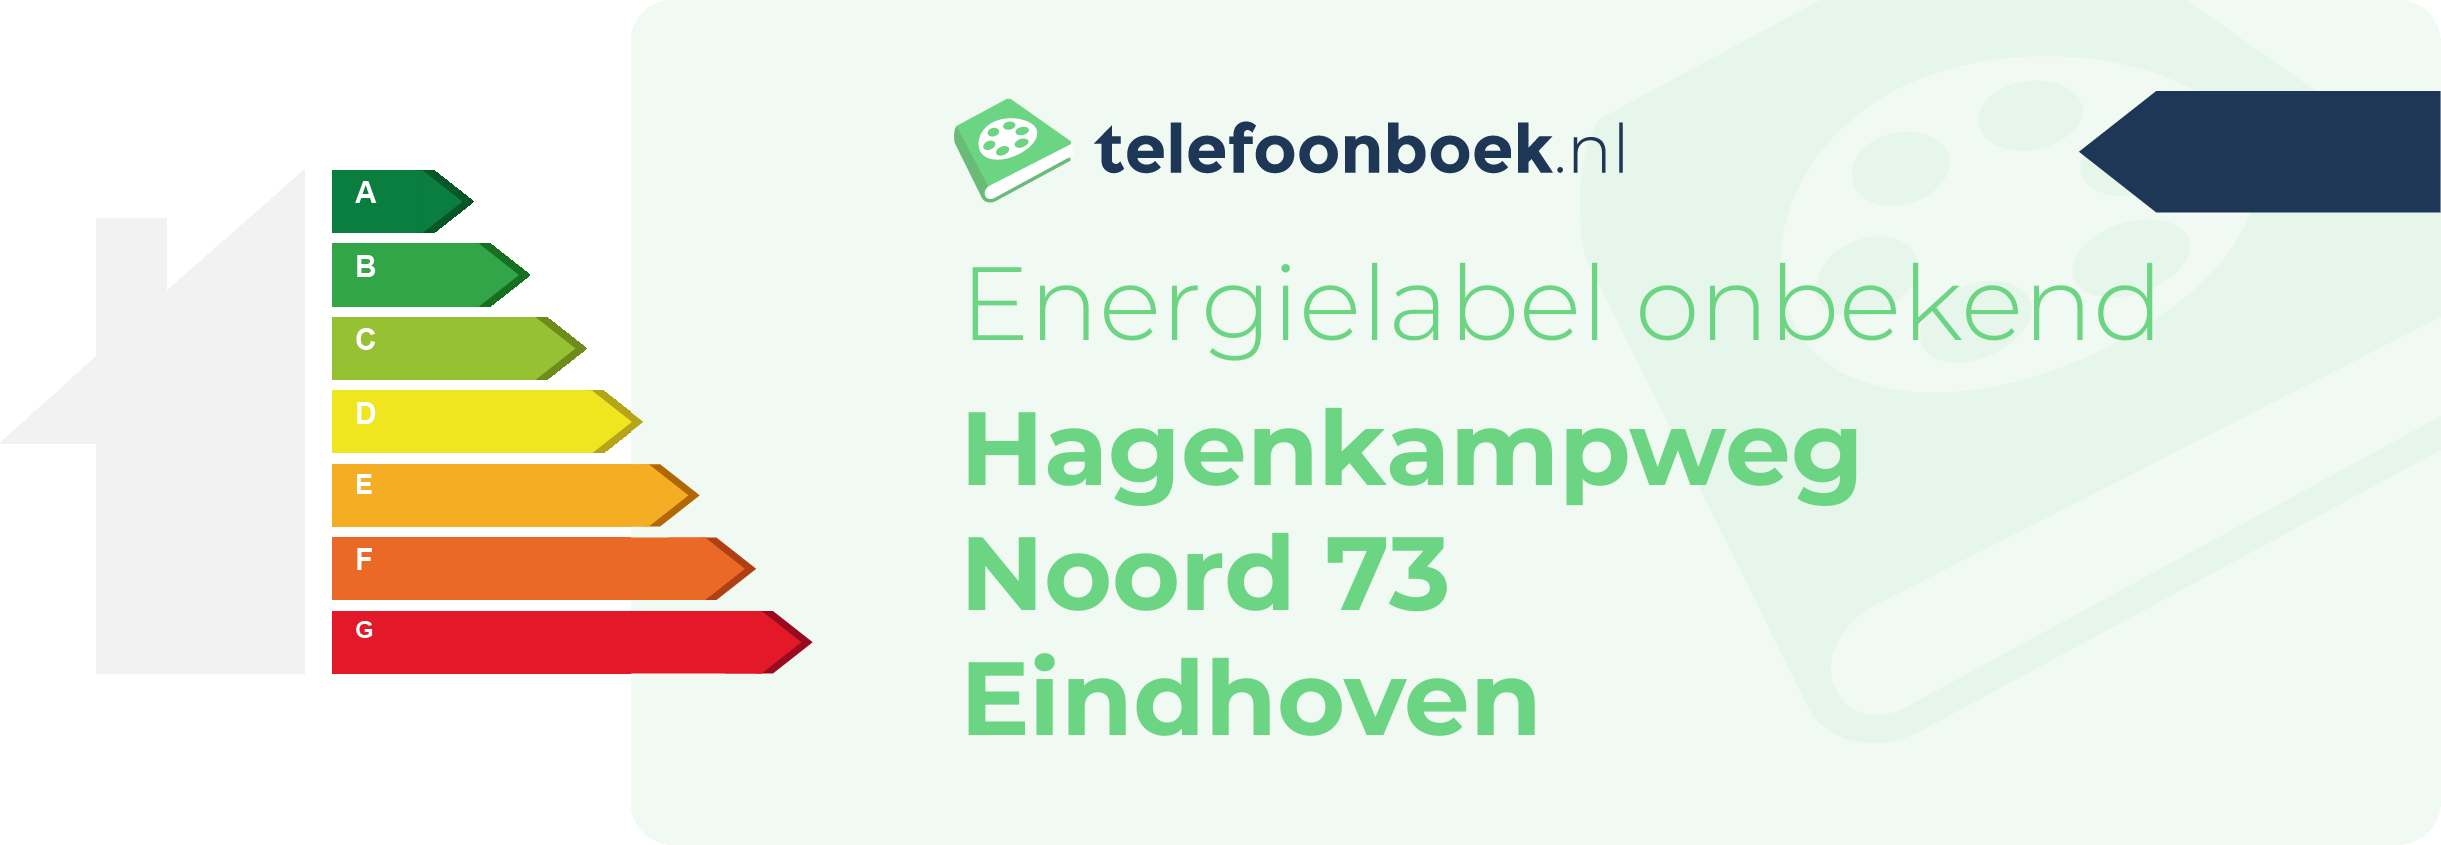 Energielabel Hagenkampweg Noord 73 Eindhoven